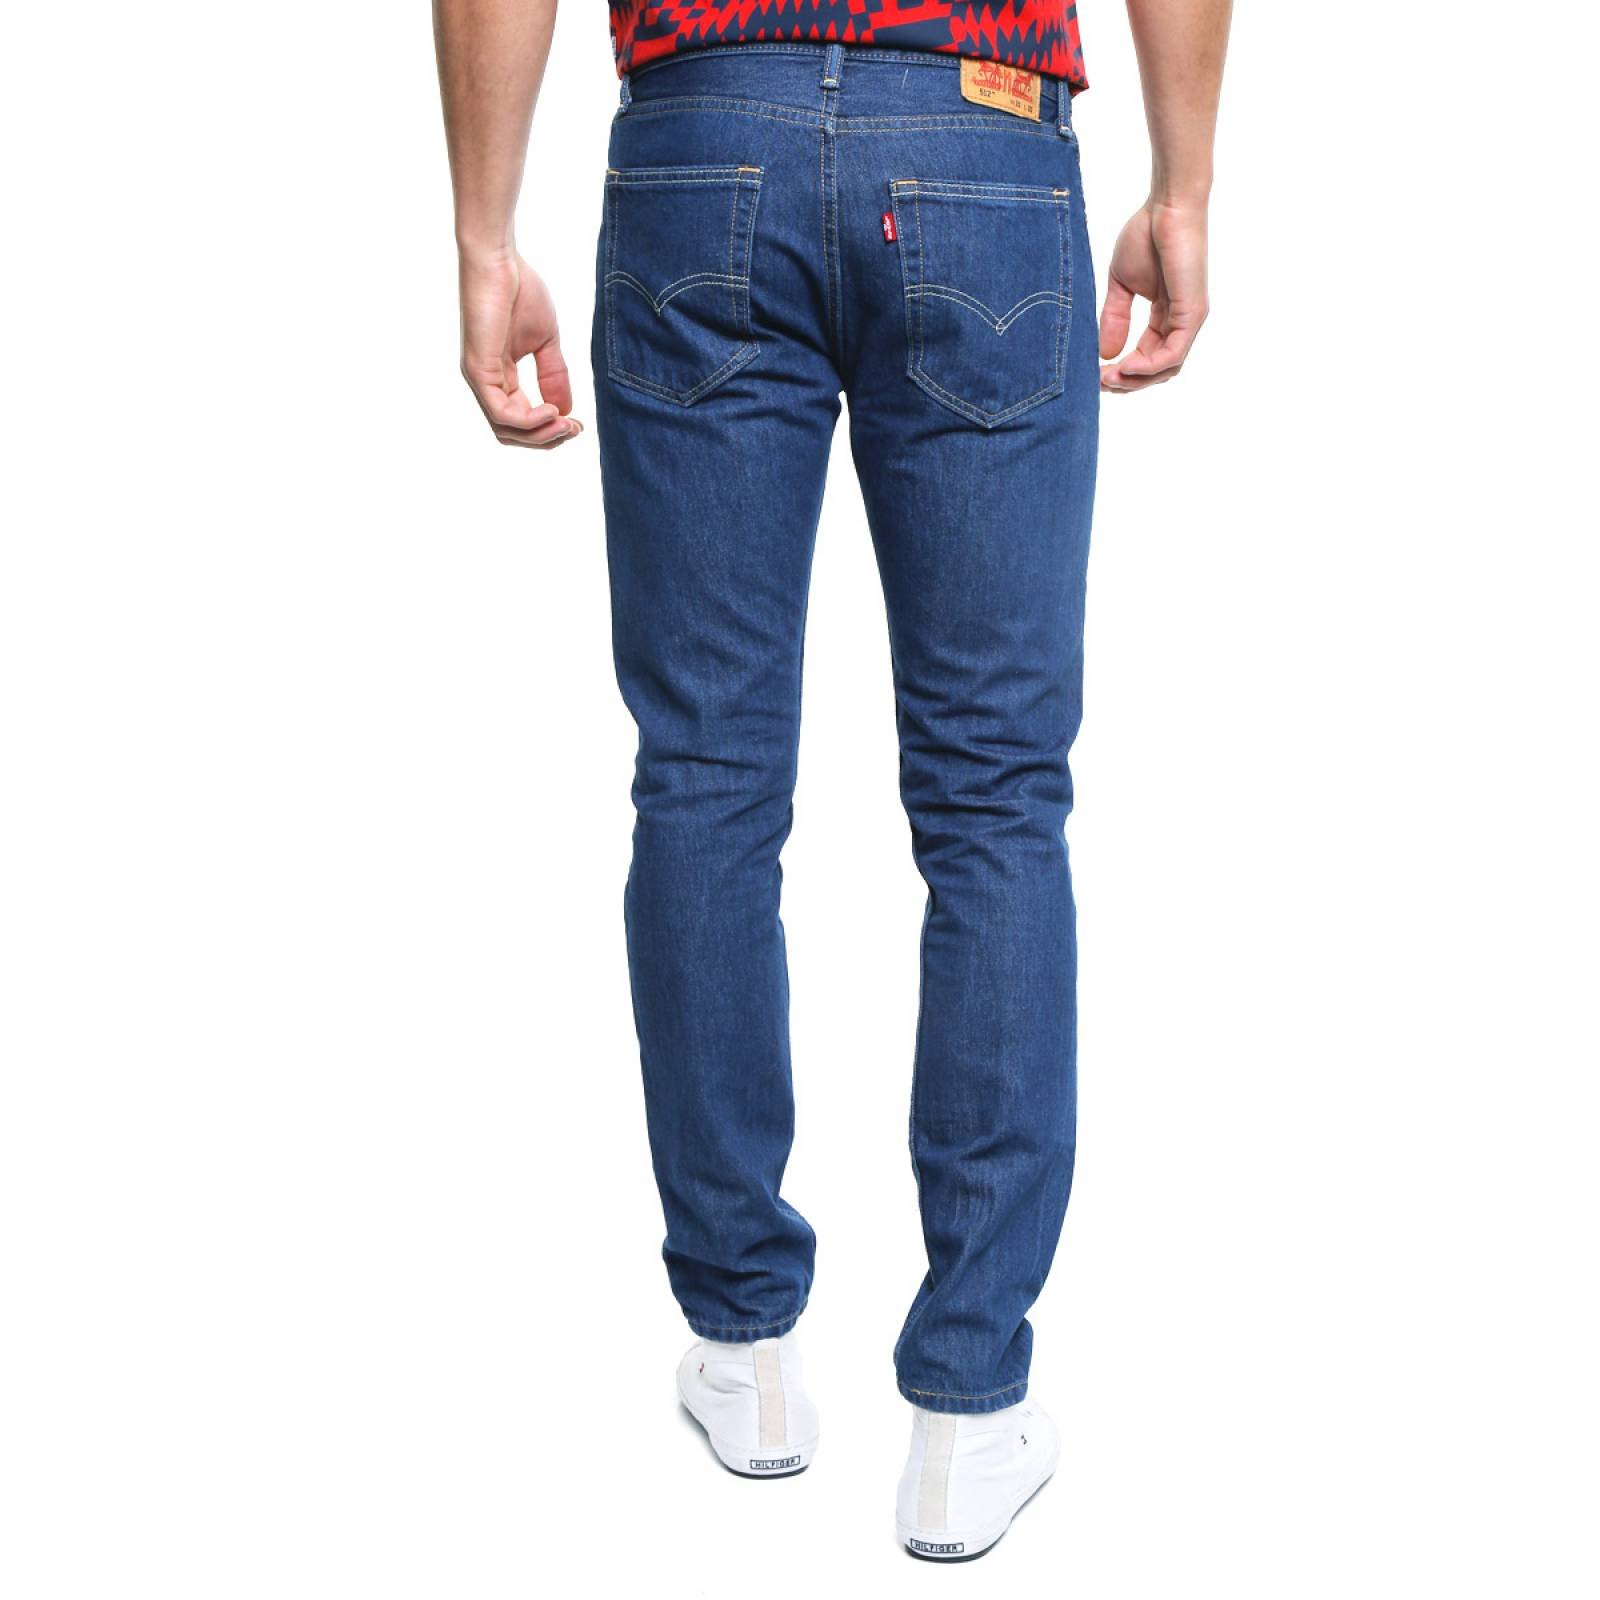 Jeans 512 Slim Taper para Caballero